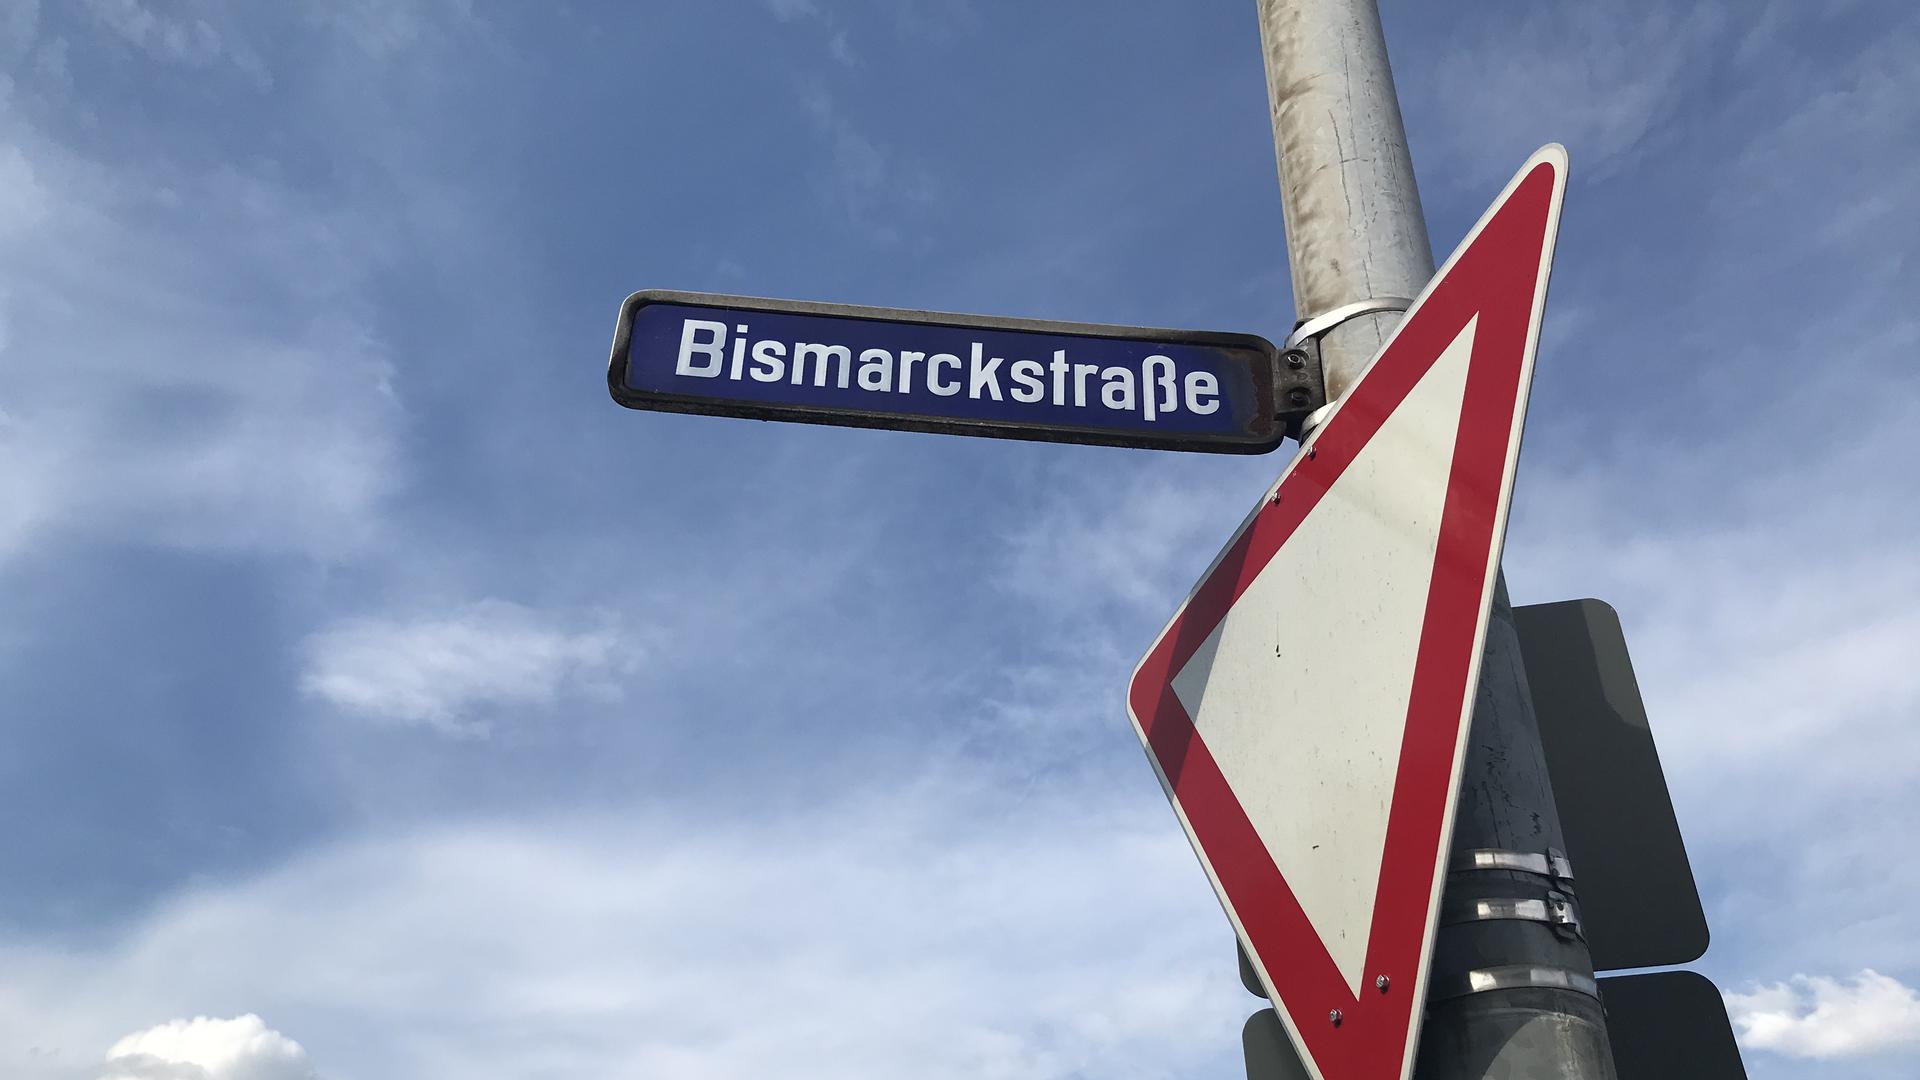 Eine Straße in Gaggenau ist nach Otto von Bismarck benannt. Berühmt ist er unter anderem für die Einführung von Sozialversicherungen, darunter die gesetzliche Krankenversicherung. Doch er ist auch umstritten. Kritik gilt etwa seiner Rolle bei der Kolonialisierung Afrikas.